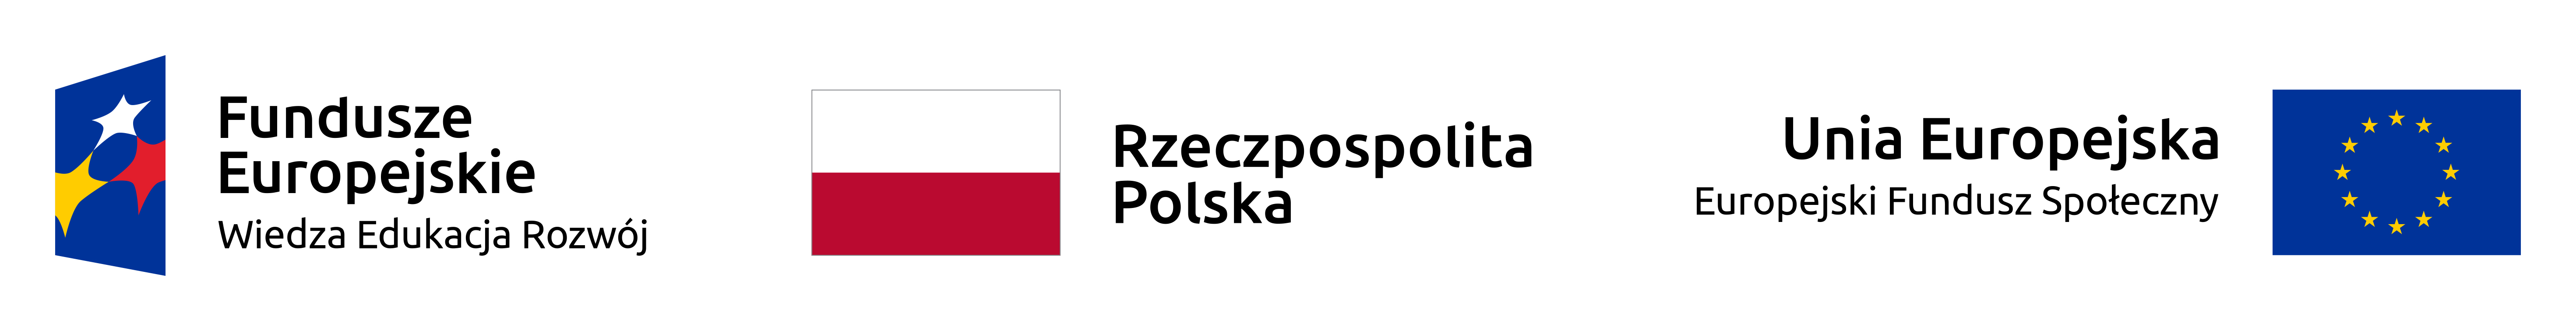 Logo Fundusze Europejskie Wiedza, Edukacja, Rozwój. Flaga Rzeczpospolitej Polskiej. Flaga Unii Europejskiej, Europejski Fundusz Społeczny